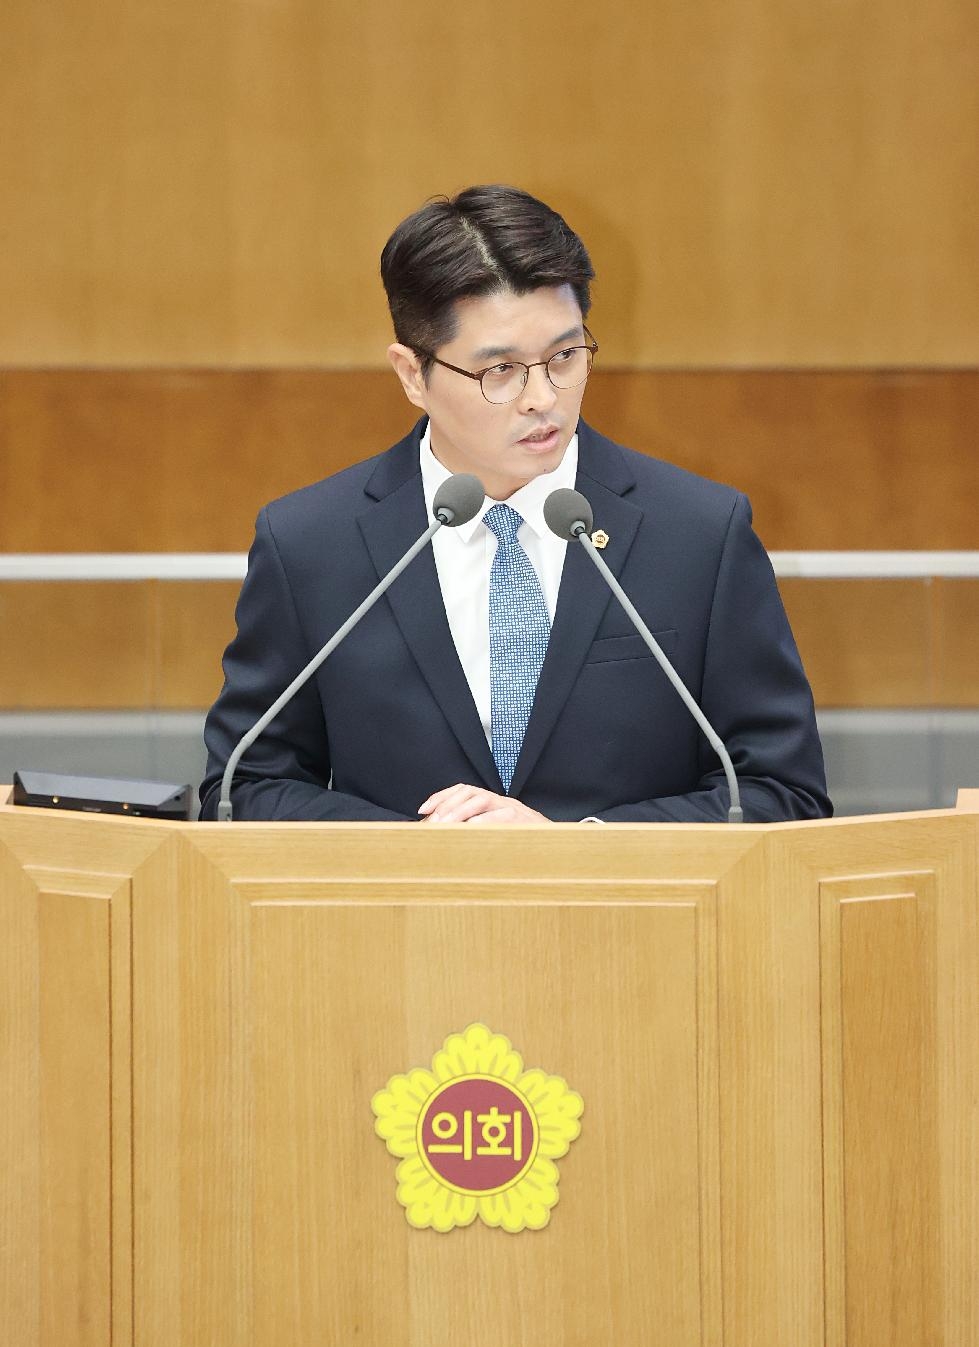 경기도의회 이재영 의원, “경기도형 납품대금 연동제 실시를 위한 제언” 